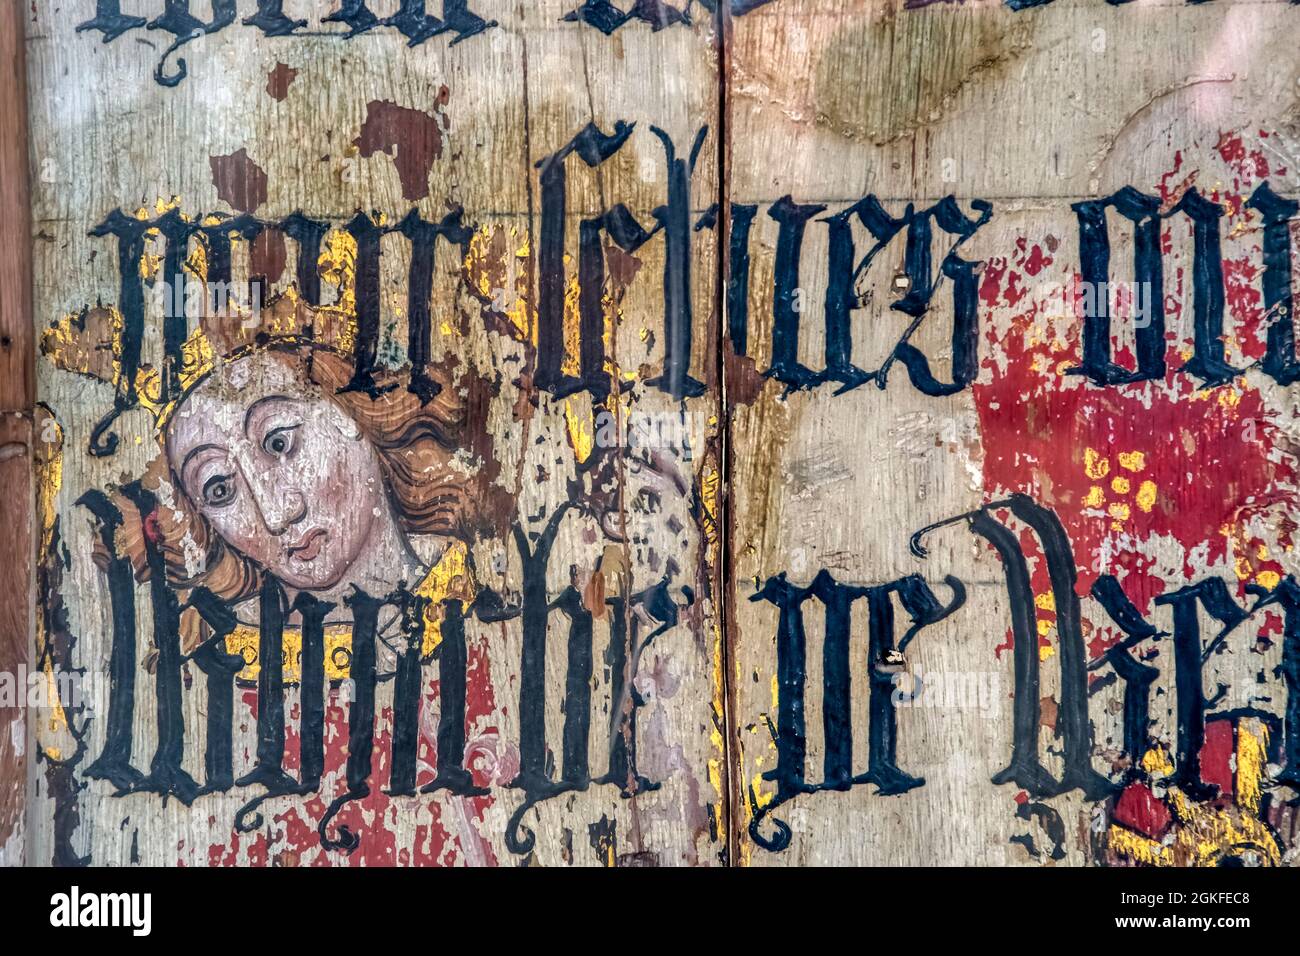 Schermata del rood di Binham Priory. Pittura medievale di Santa Caterina che mostra attraverso la lettera nera sovradipinta testo dalla bibbia di Cranmer del 1539. Foto Stock